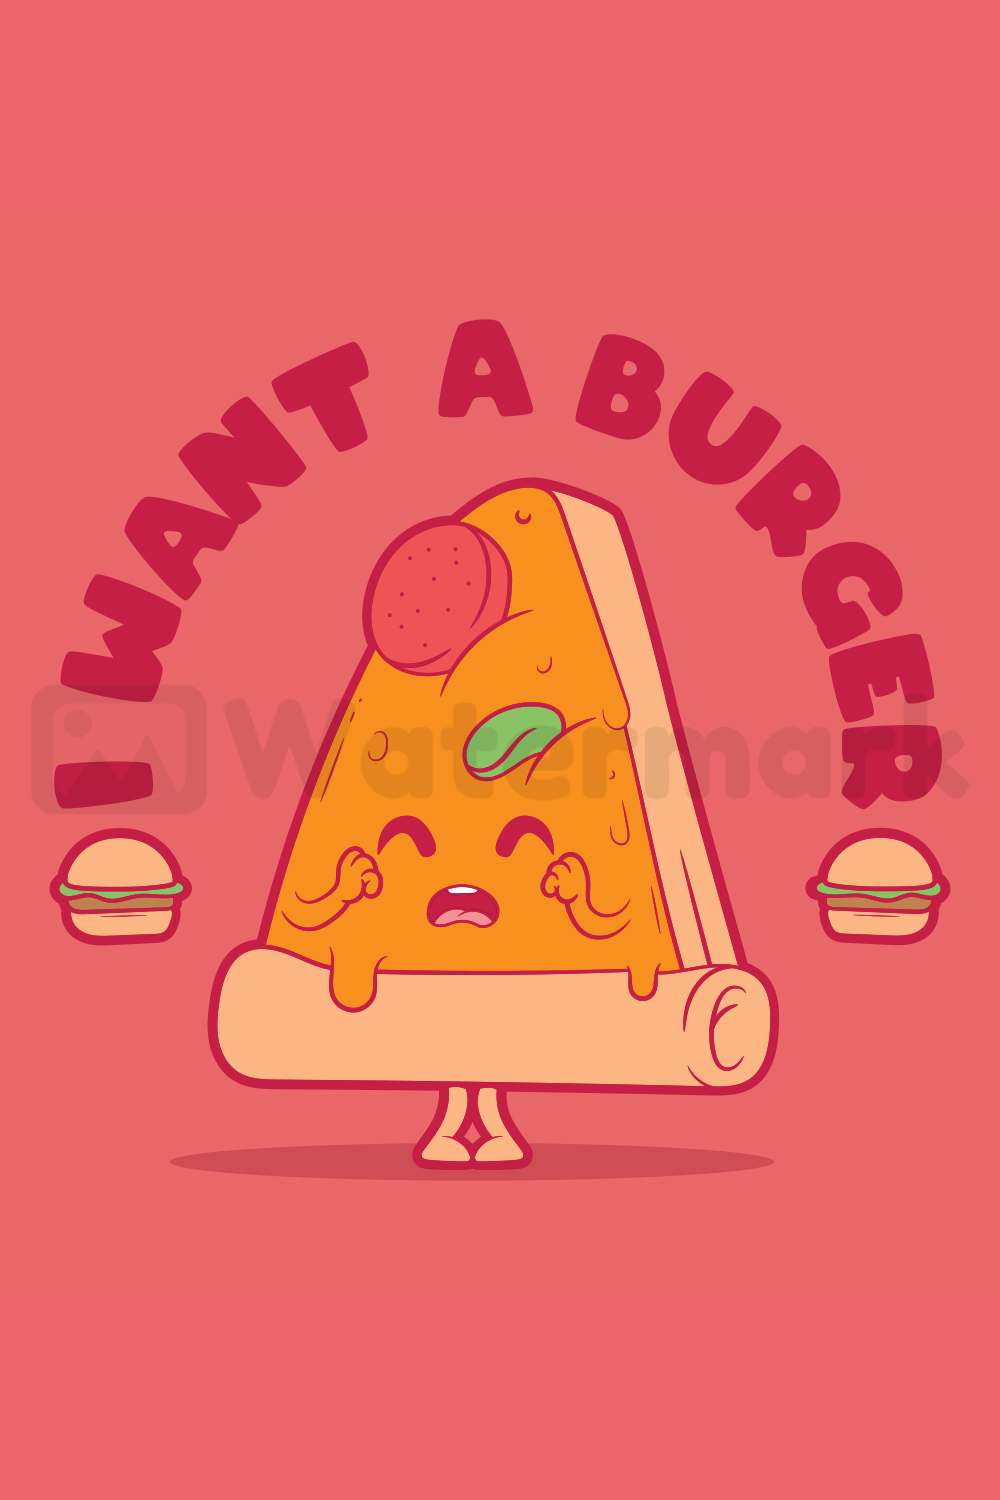 I want a Burger Vector Design pinterest image.